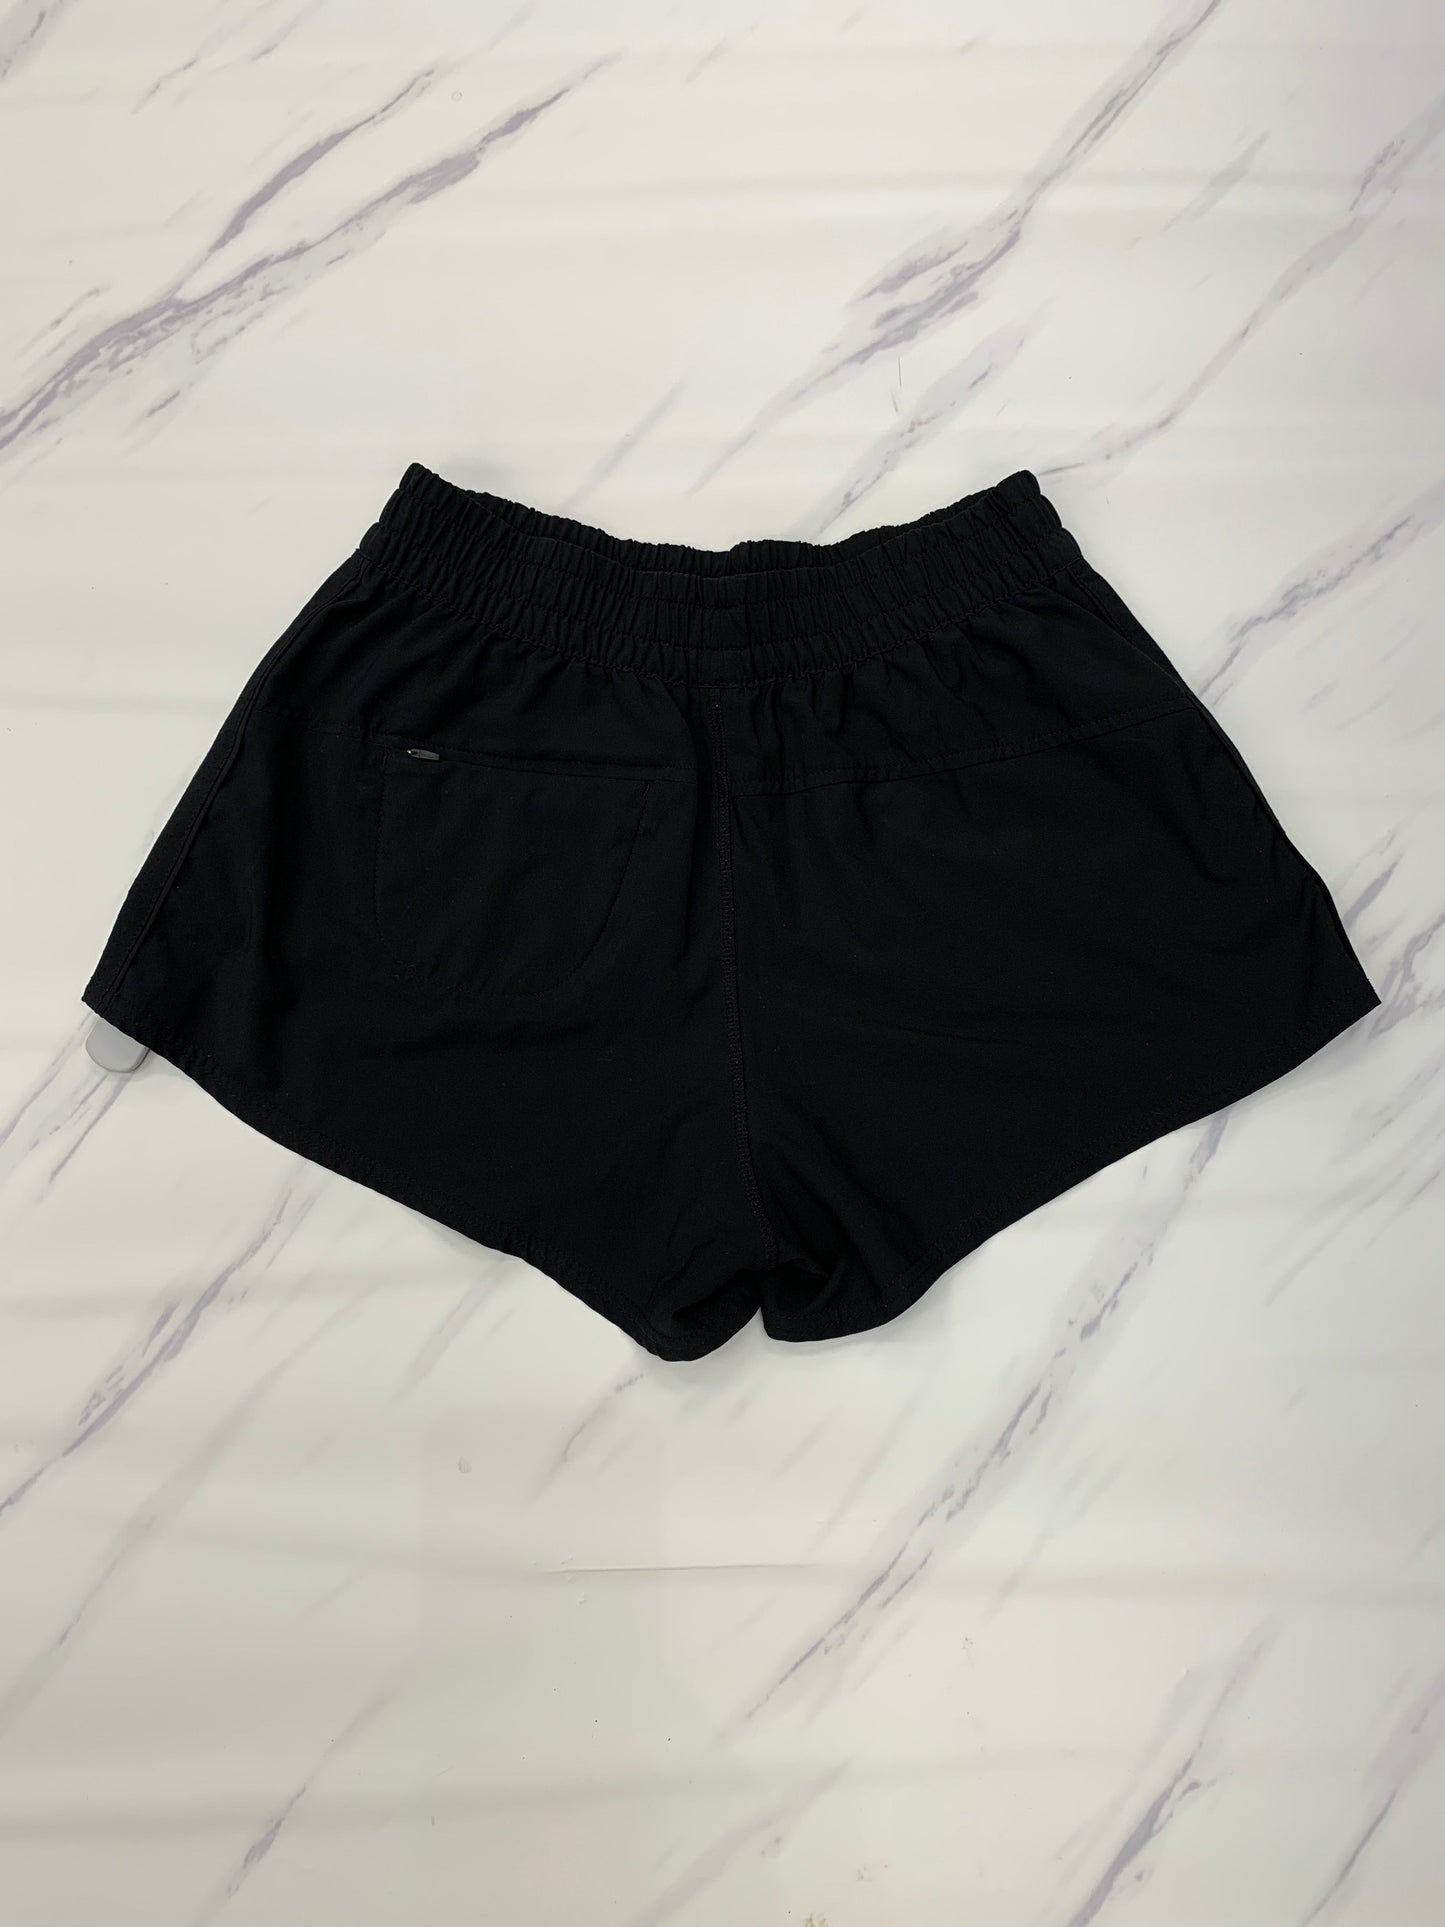 Black Athletic Shorts Vuori, Size M